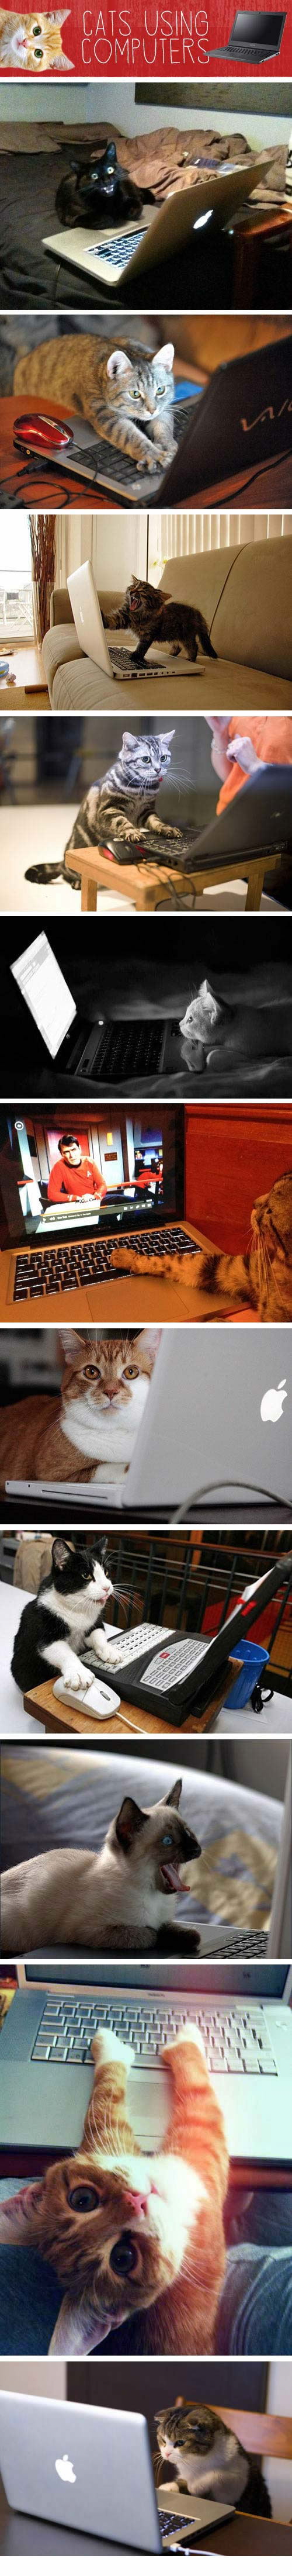 Katinai naudojasi kompiuteriais